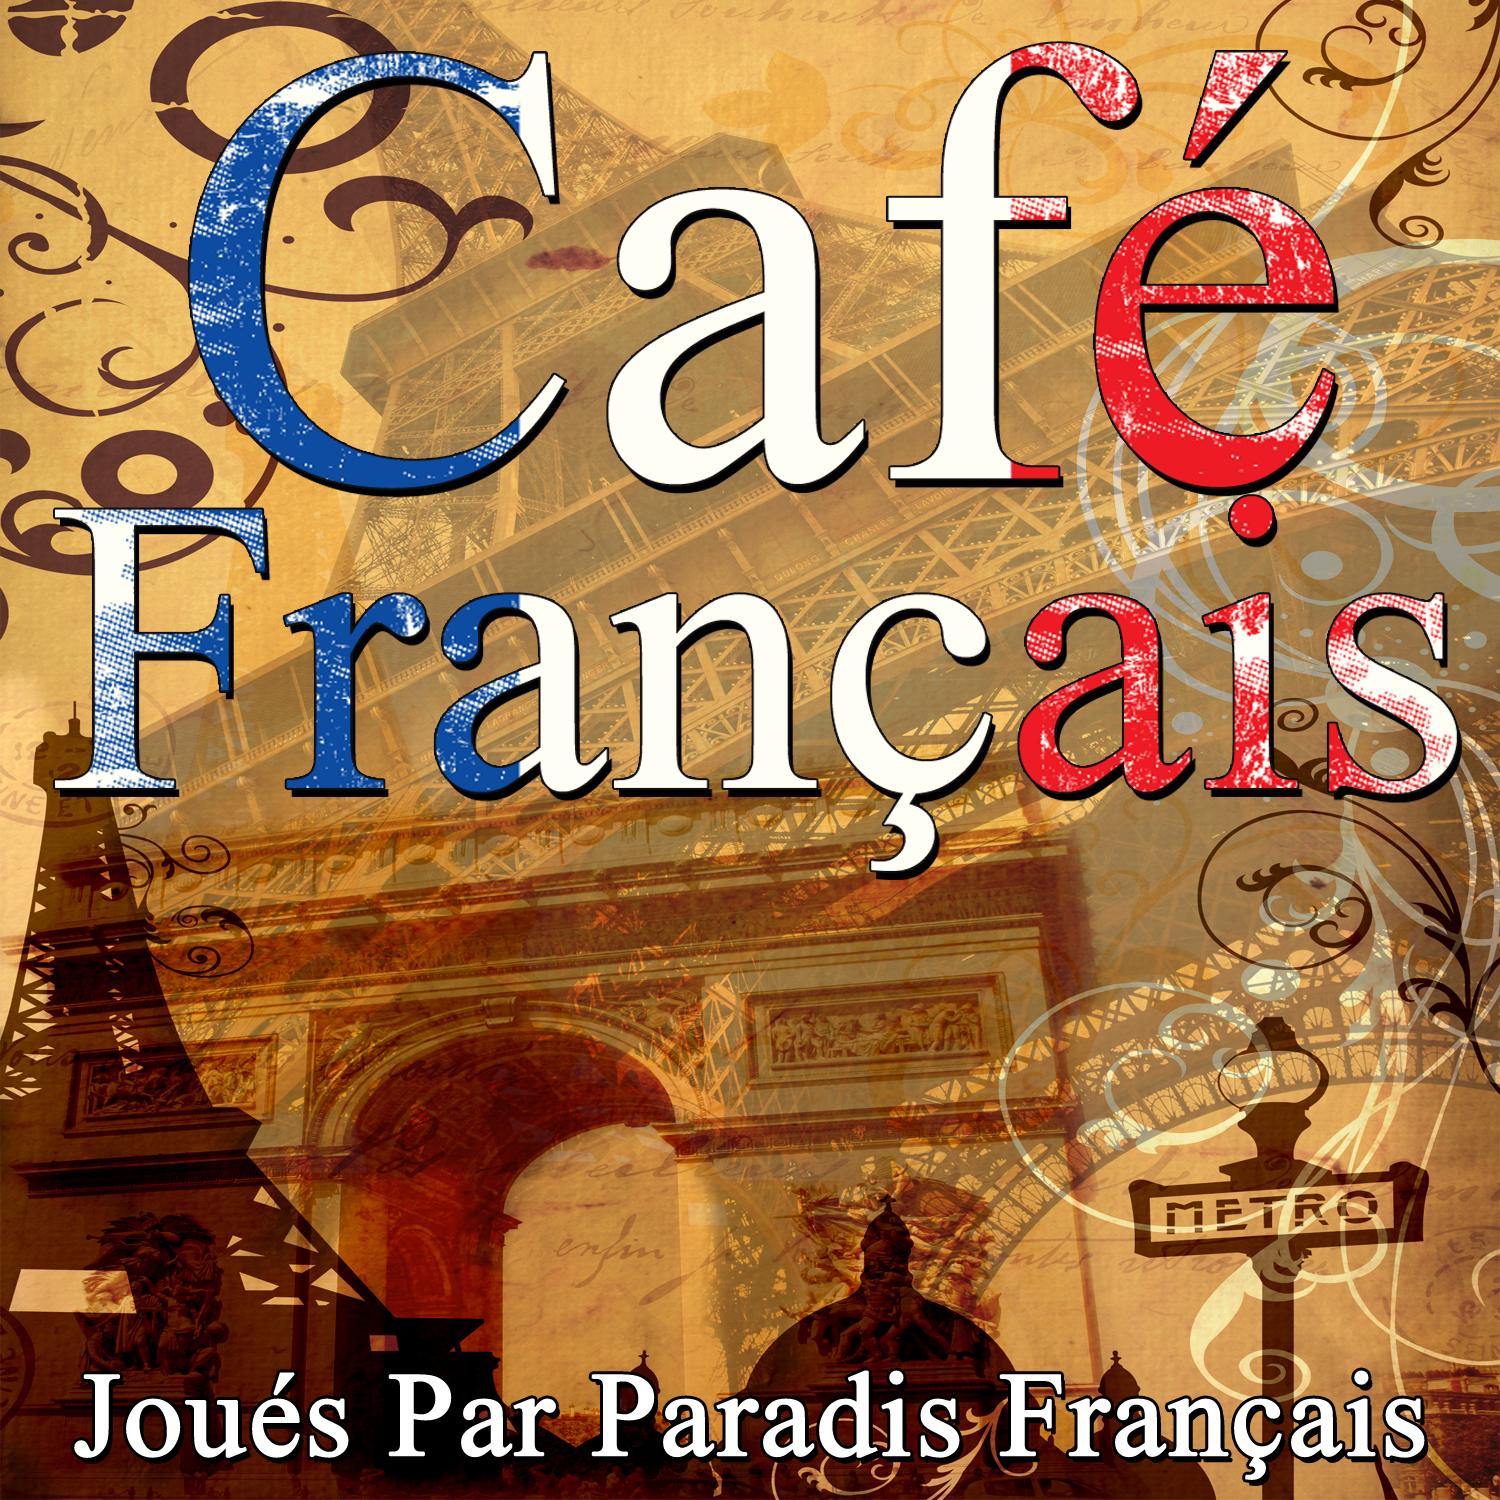 Cafe Fran ais